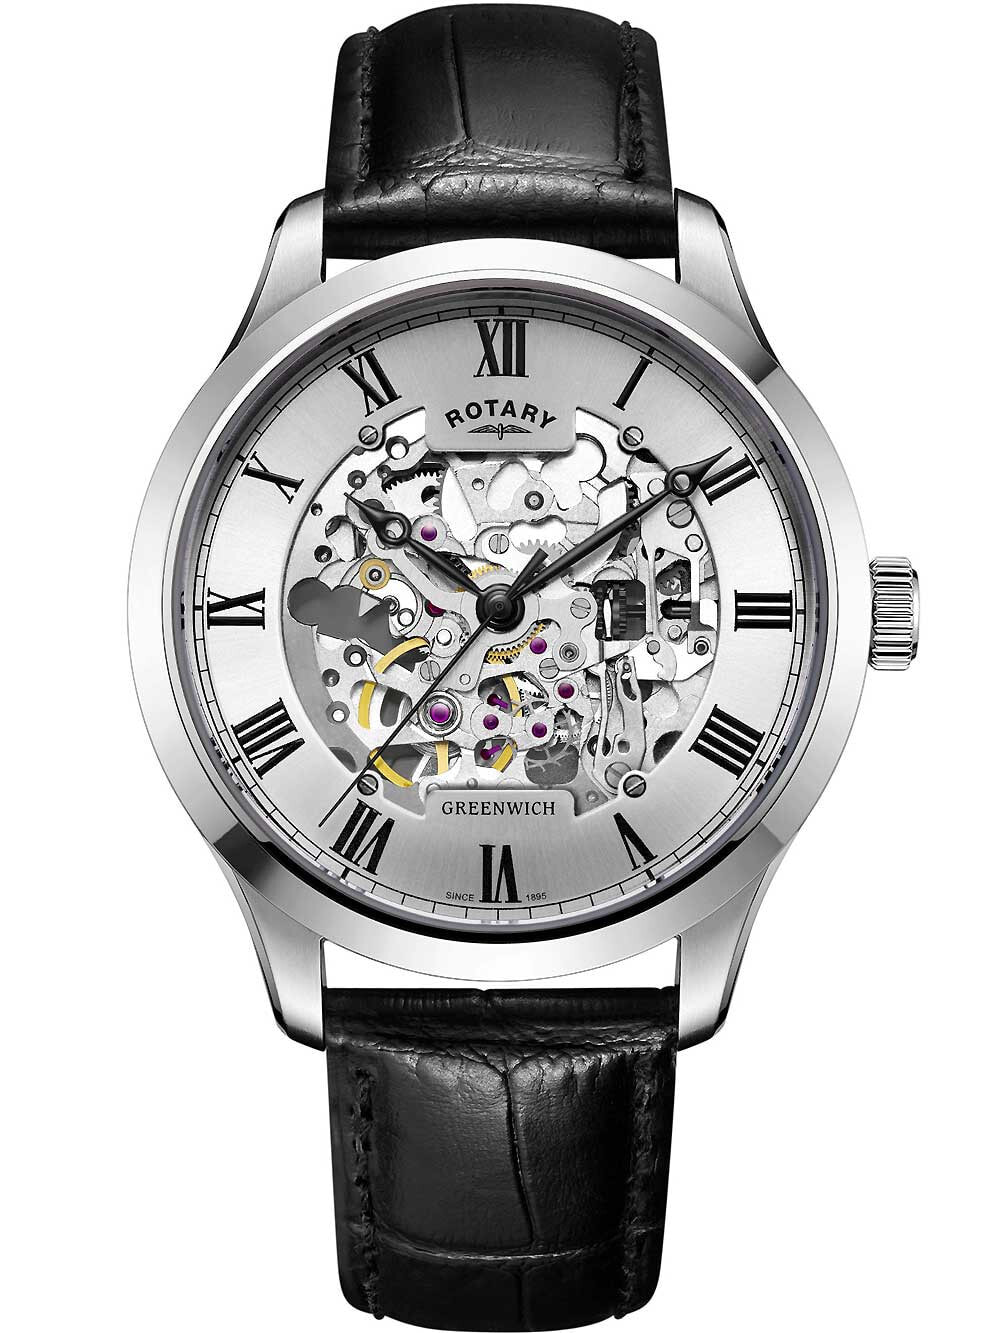 Мужские наручные часы с черным кожаным ремешком Rotary GS02940/06 Greenwich automatic mens 42mm 5ATM